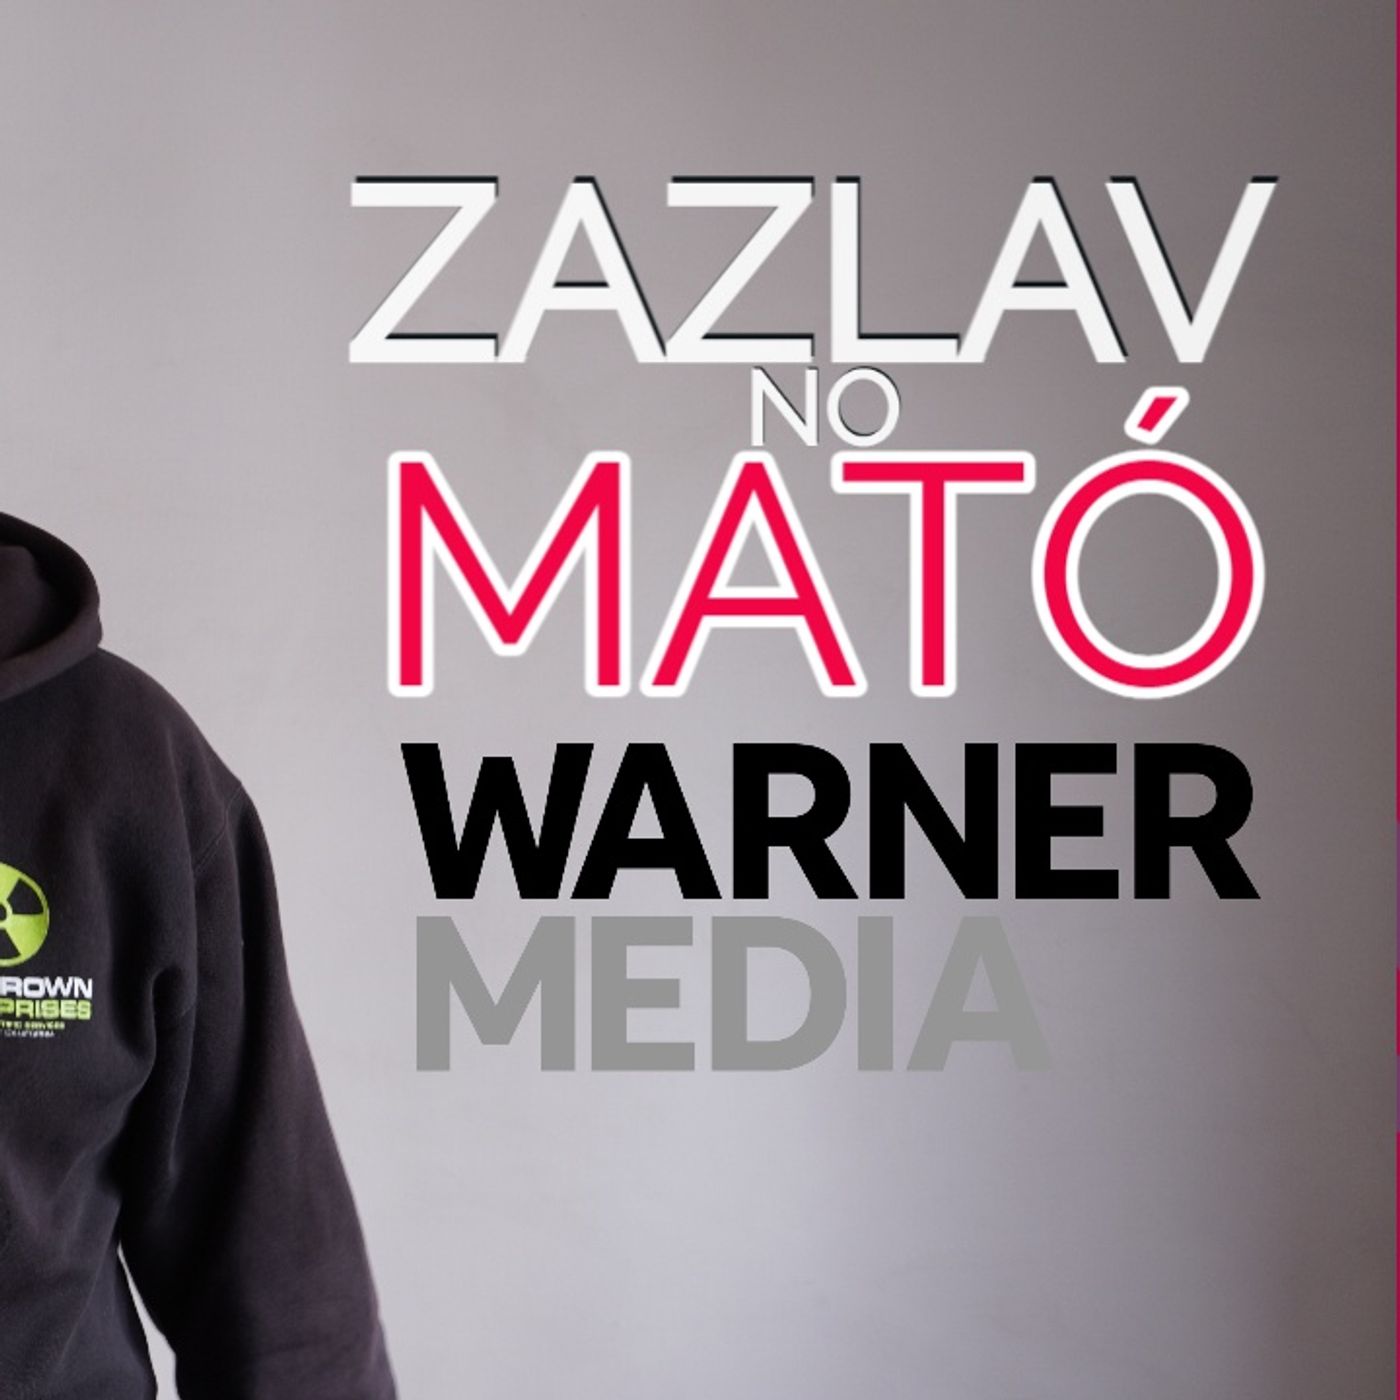 Zaslav (no) mató a Warner - The Dailies 84